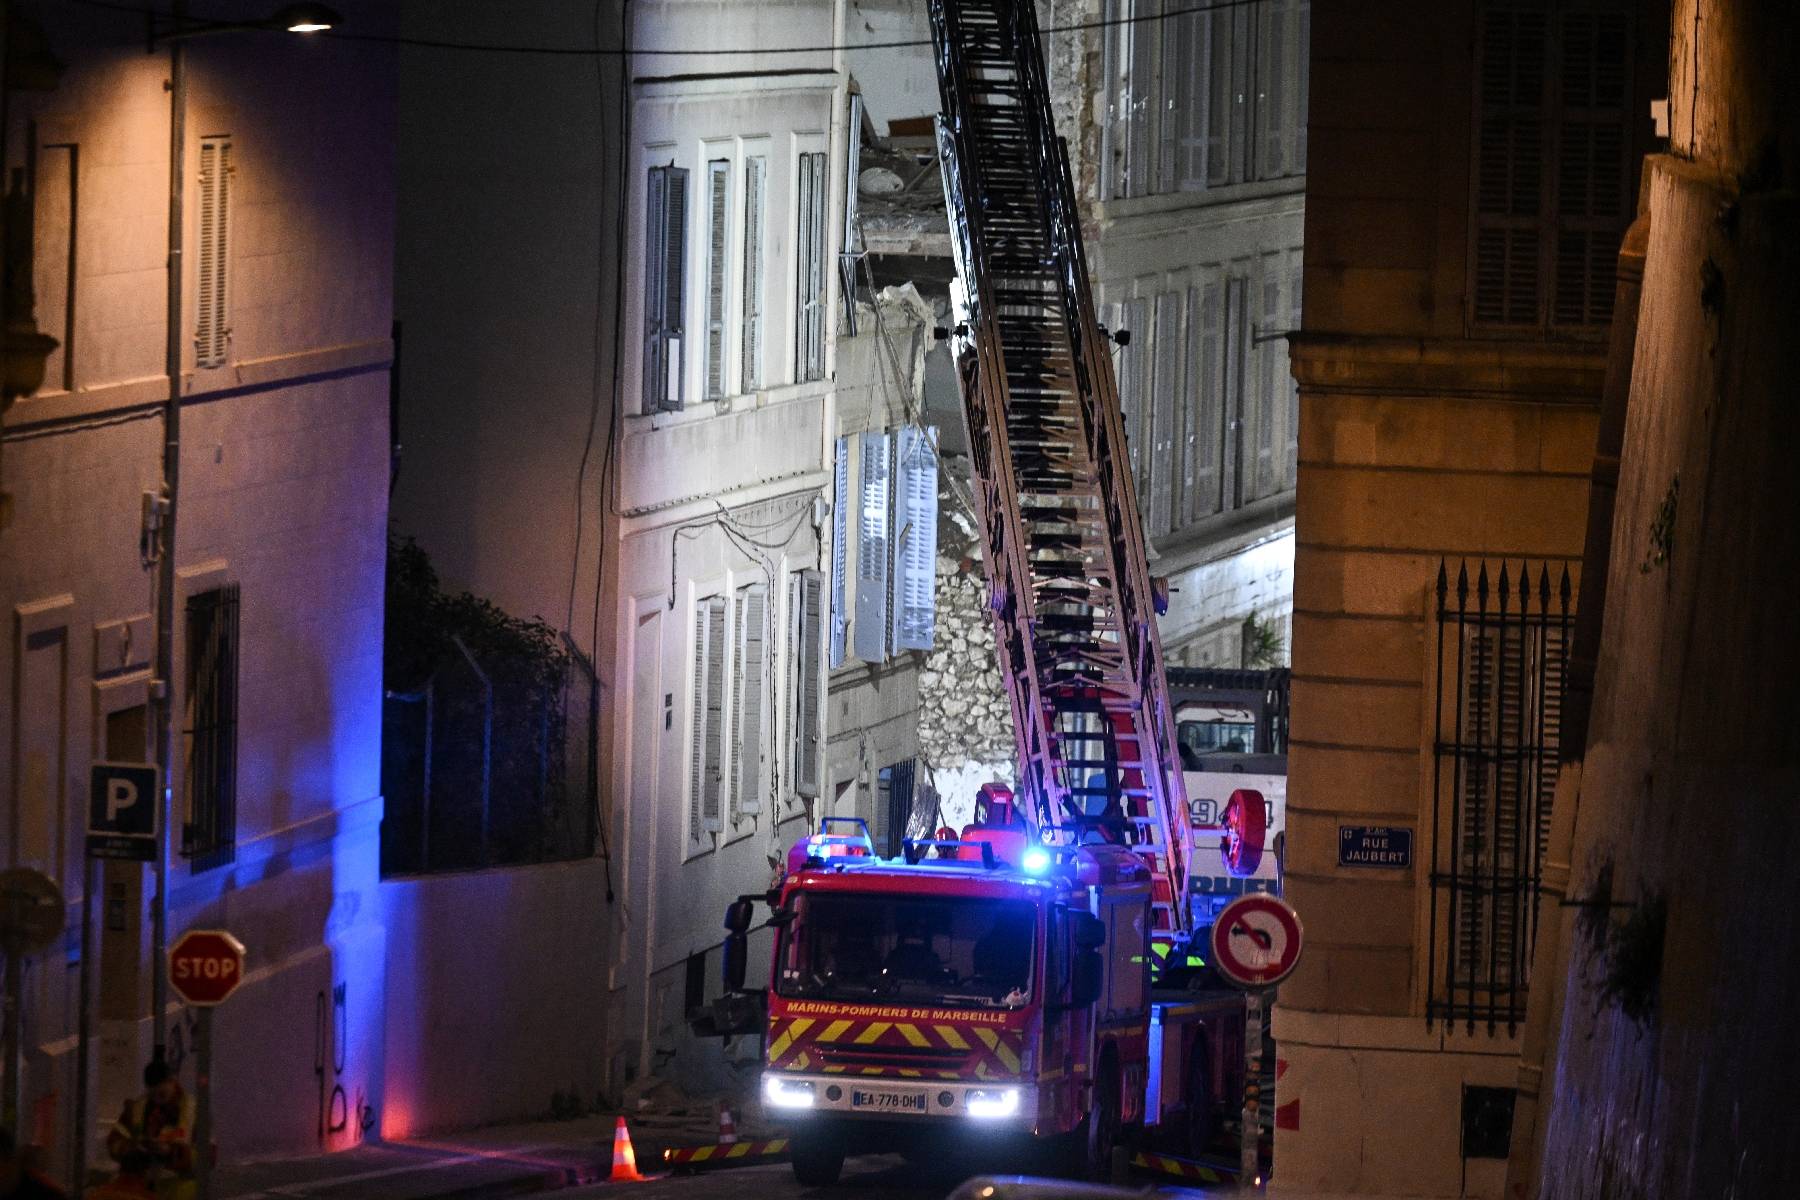 Immeuble effondré à Marseille: après les secouristes, les enquêteurs